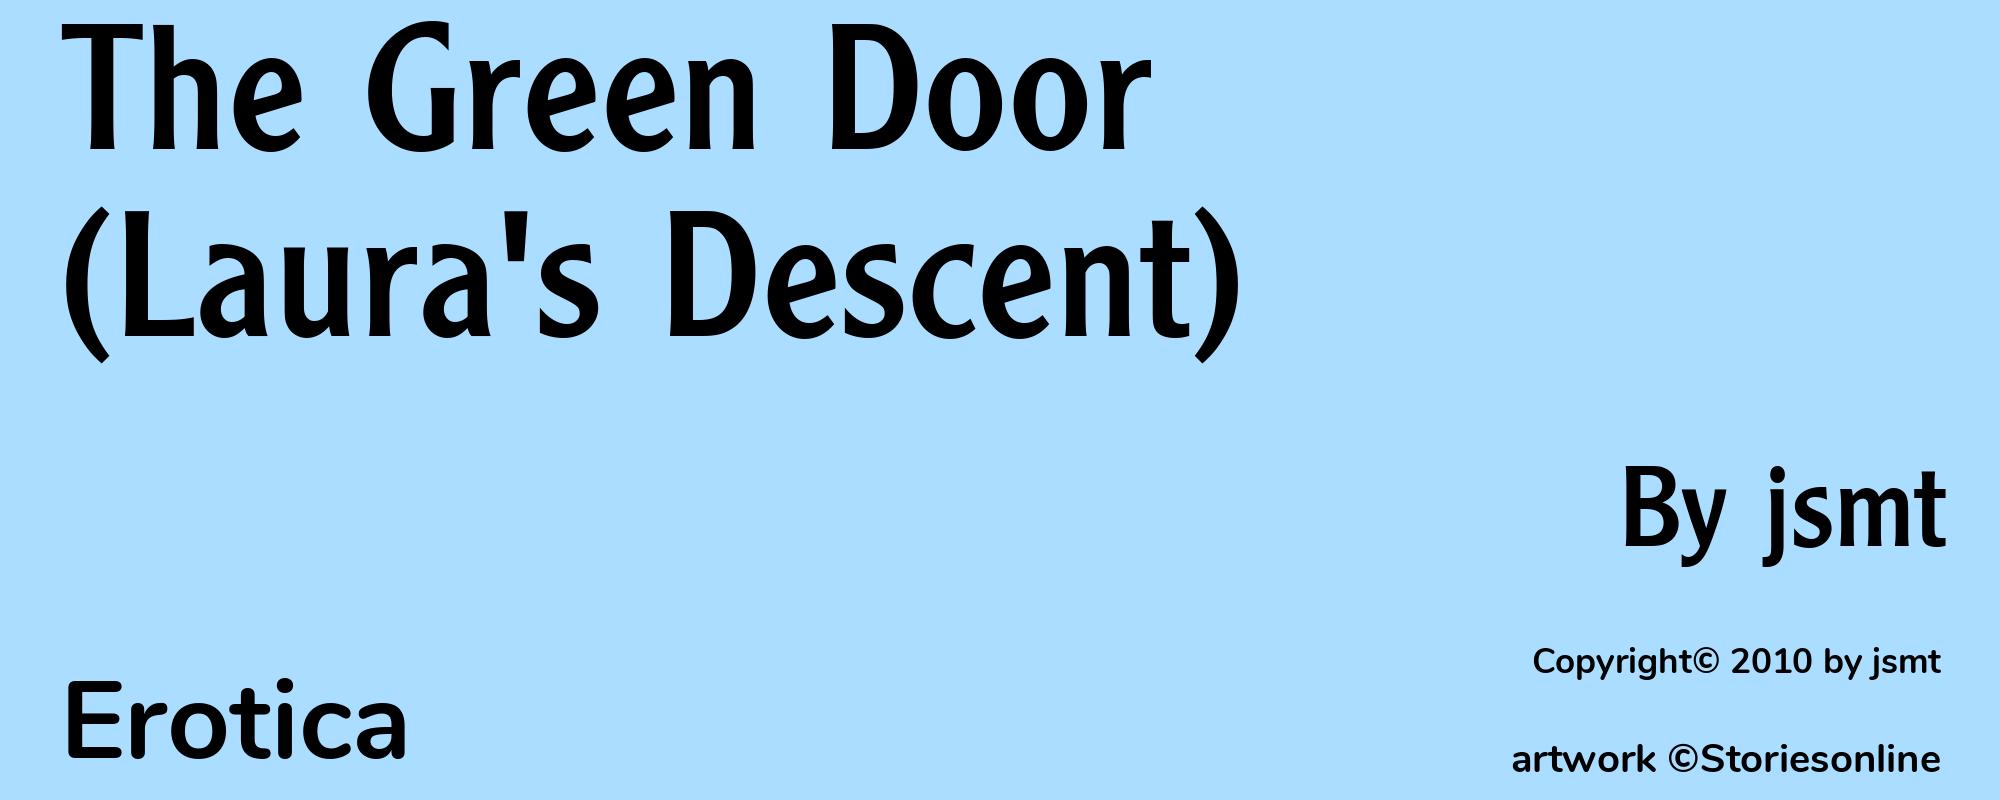 The Green Door (Laura's Descent) - Cover